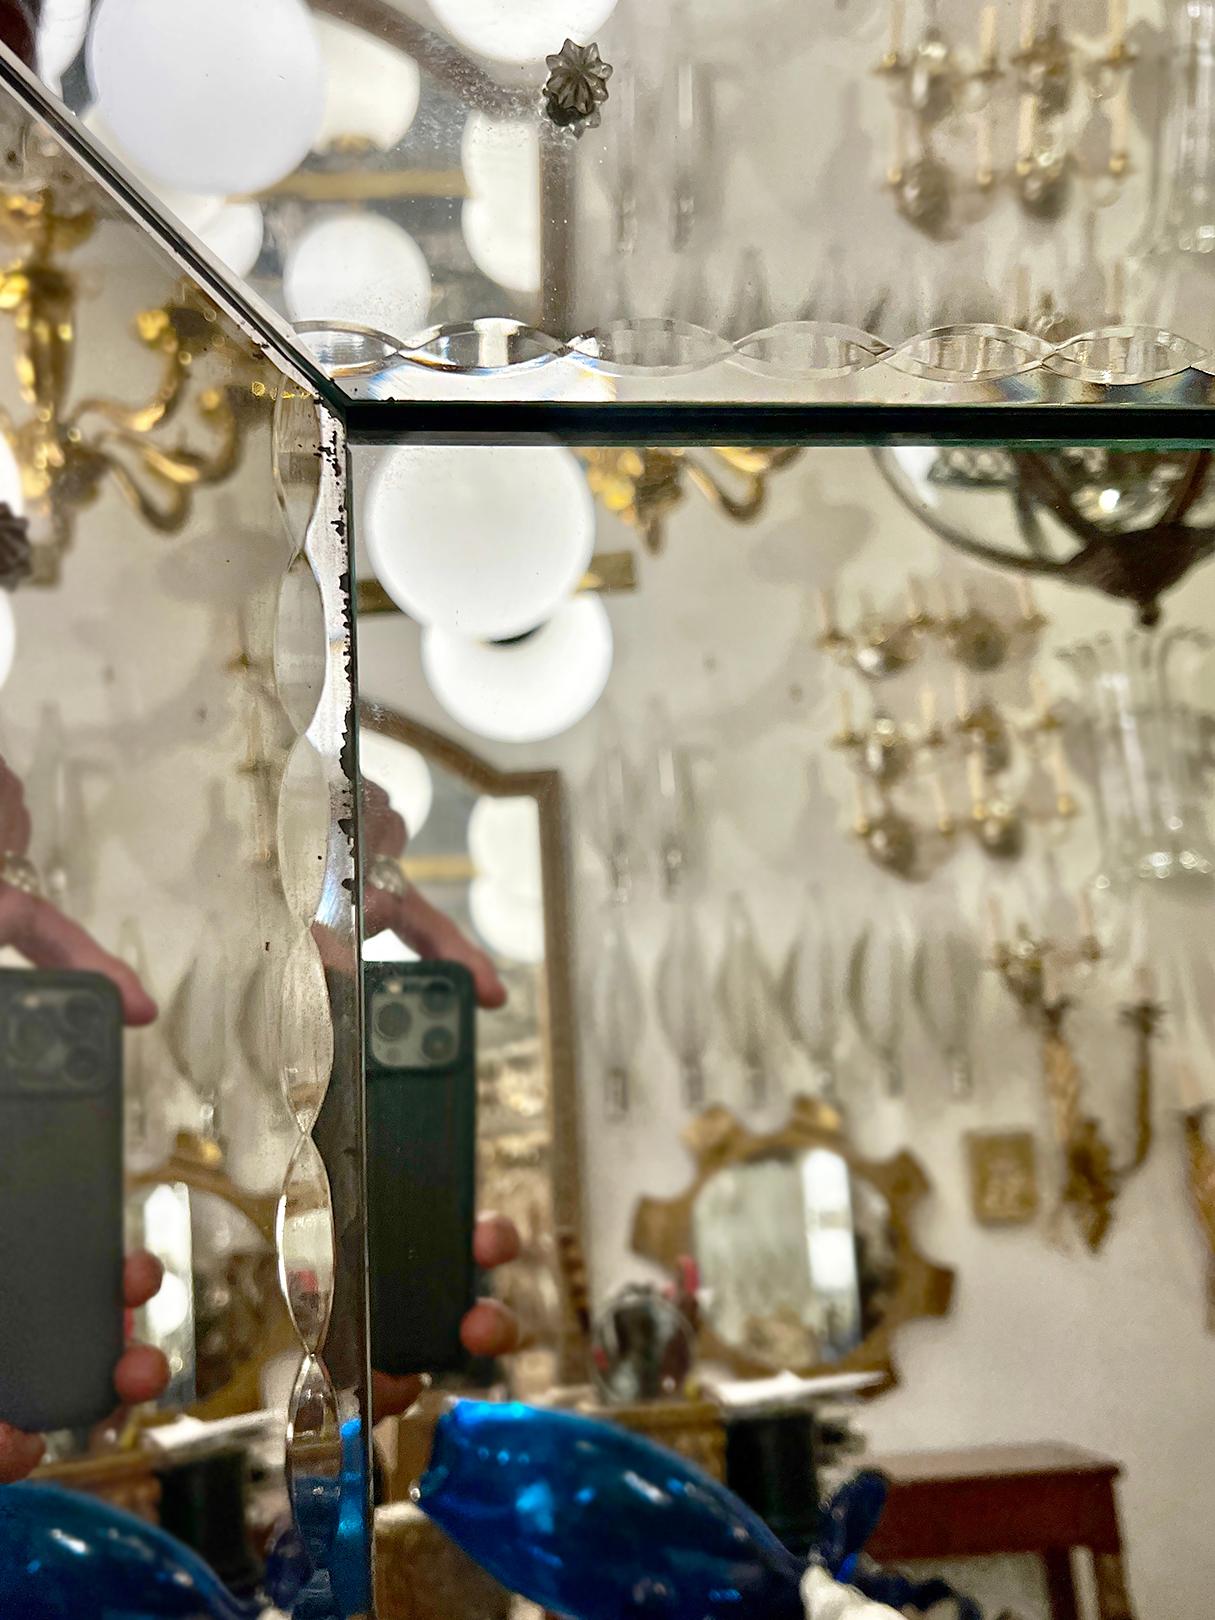 Ein circa 1960's italienischen geätzten Spiegel mit abgeschrägten Kanten.

Abmessungen:
Höhe: 58